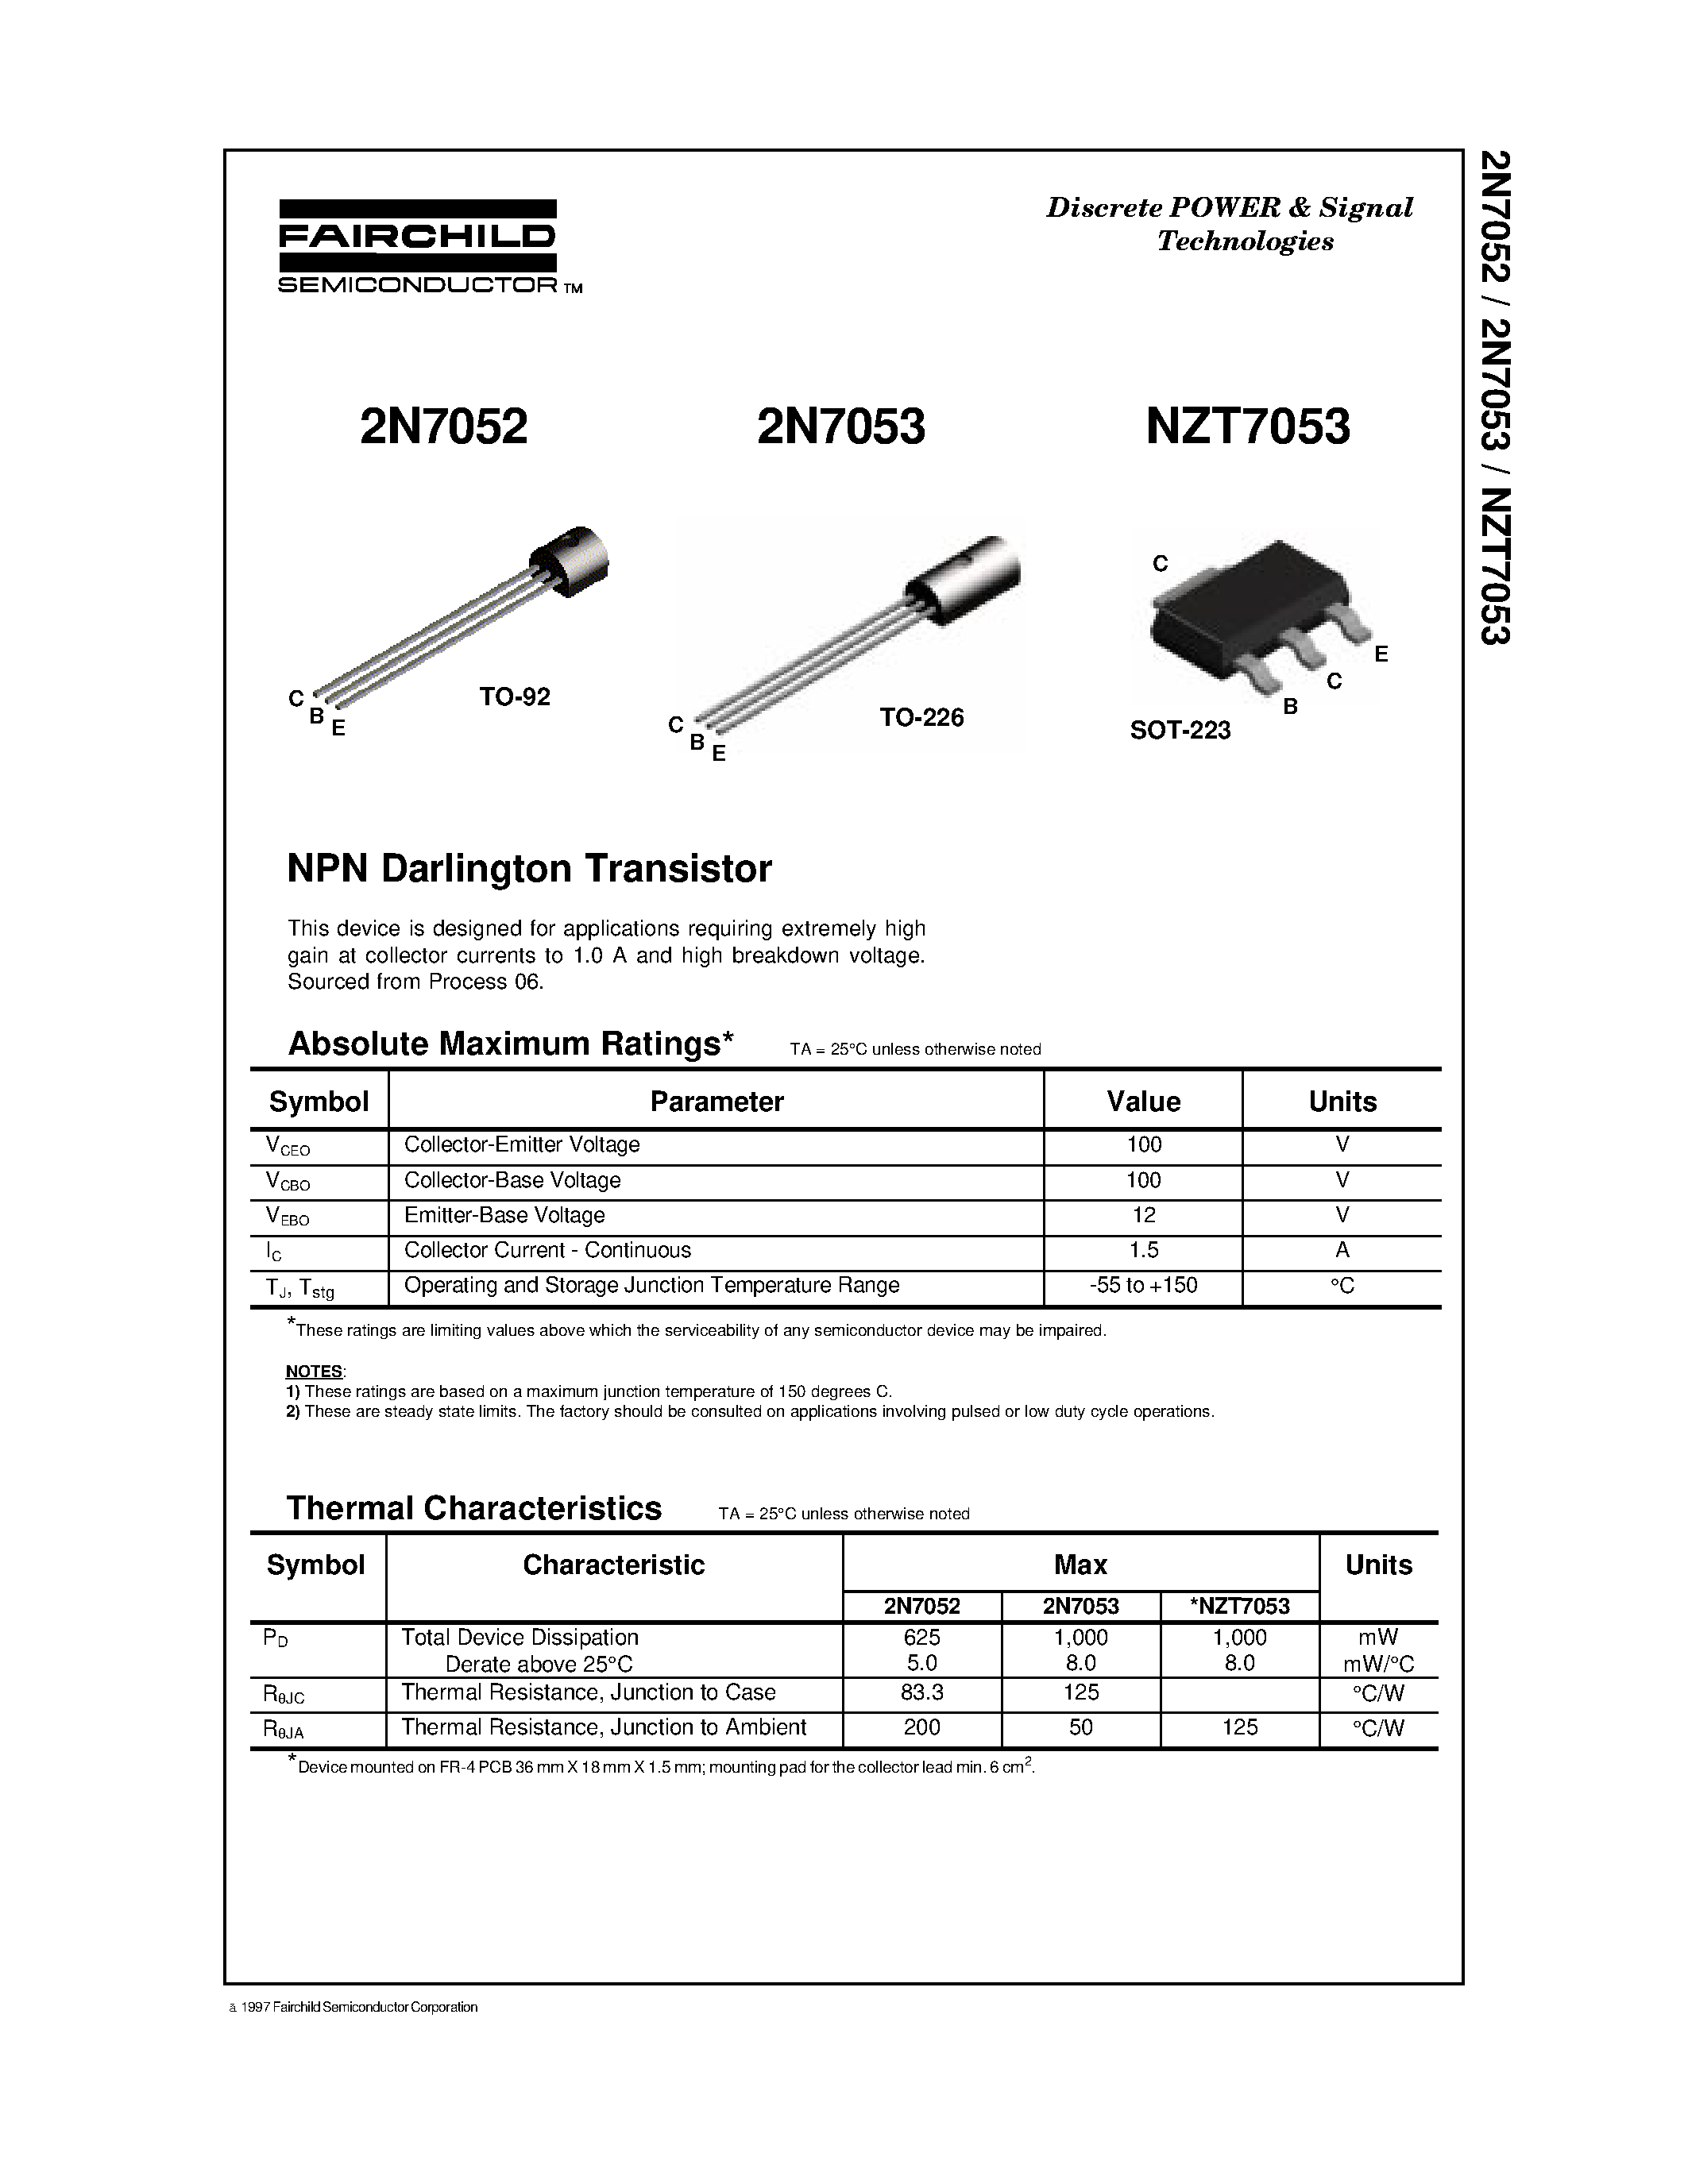 Даташит NZT7053-NPN Darlington Transistor страница 1